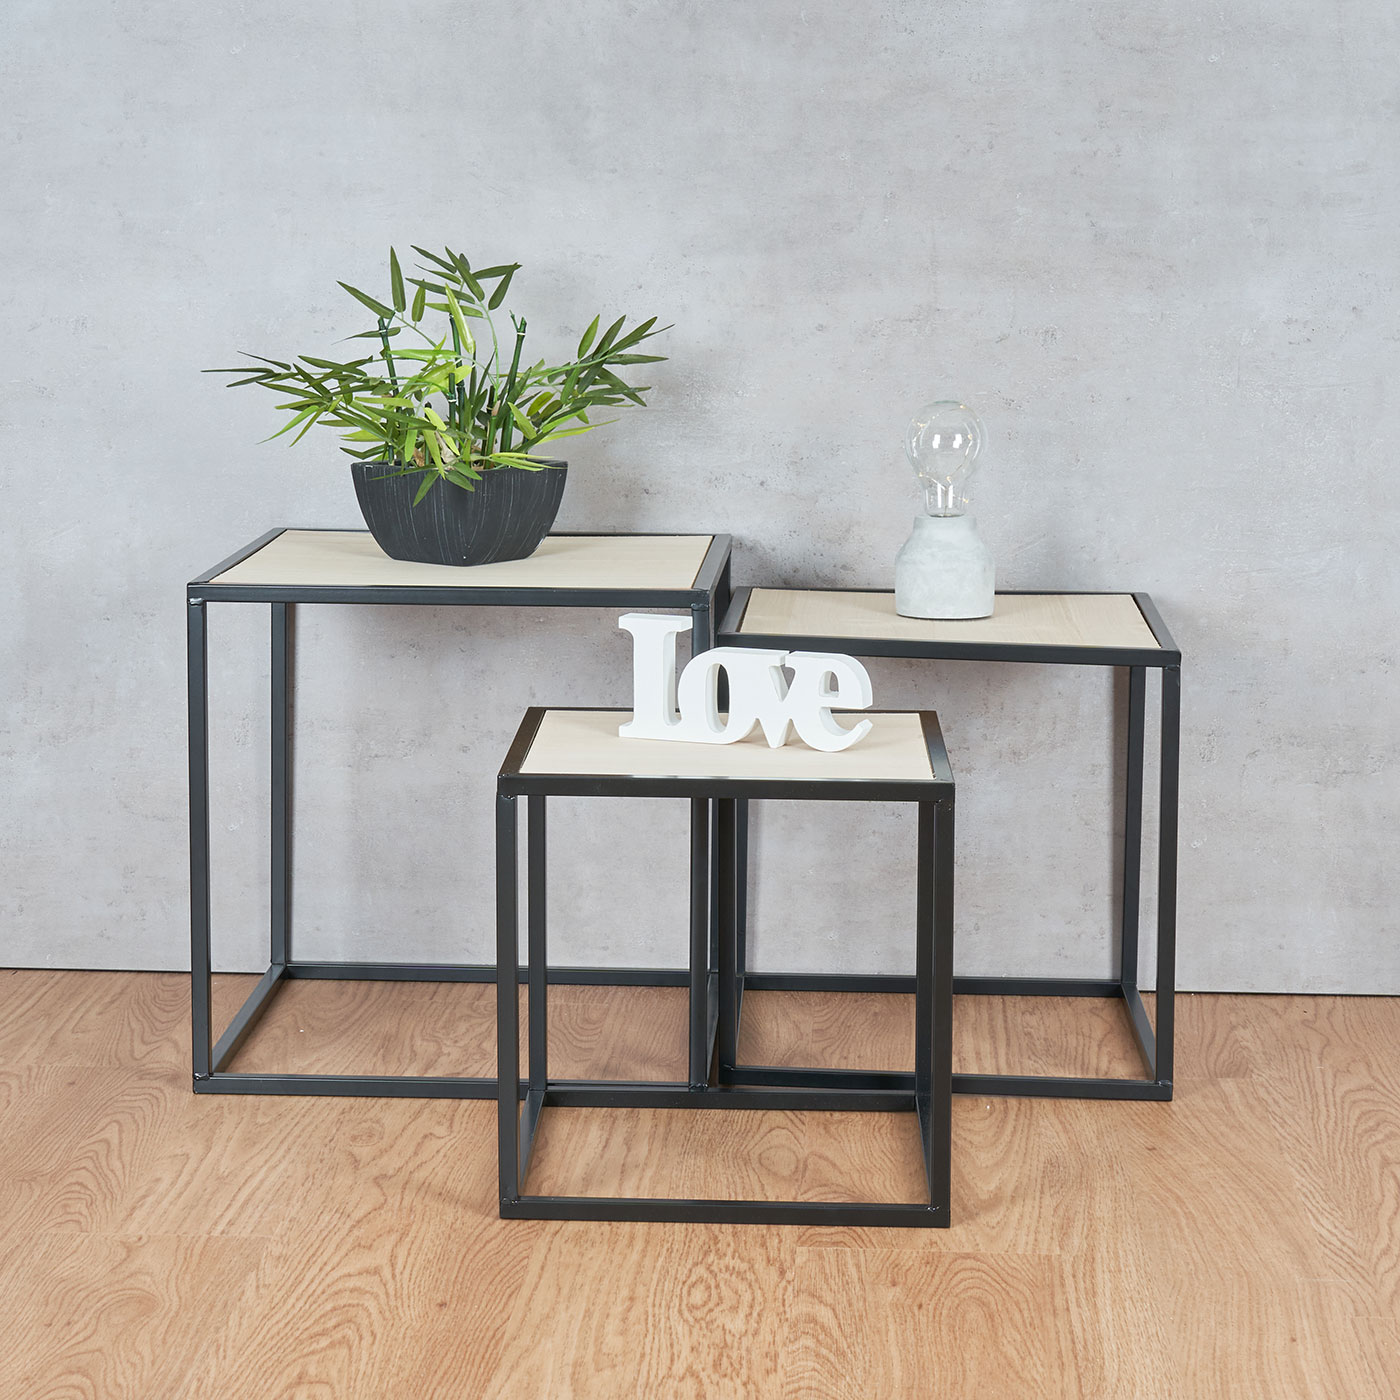 3er Set Beistelltisch Metall Schwarz Holz Cube quadratisch Couchtisch Deko Tisch